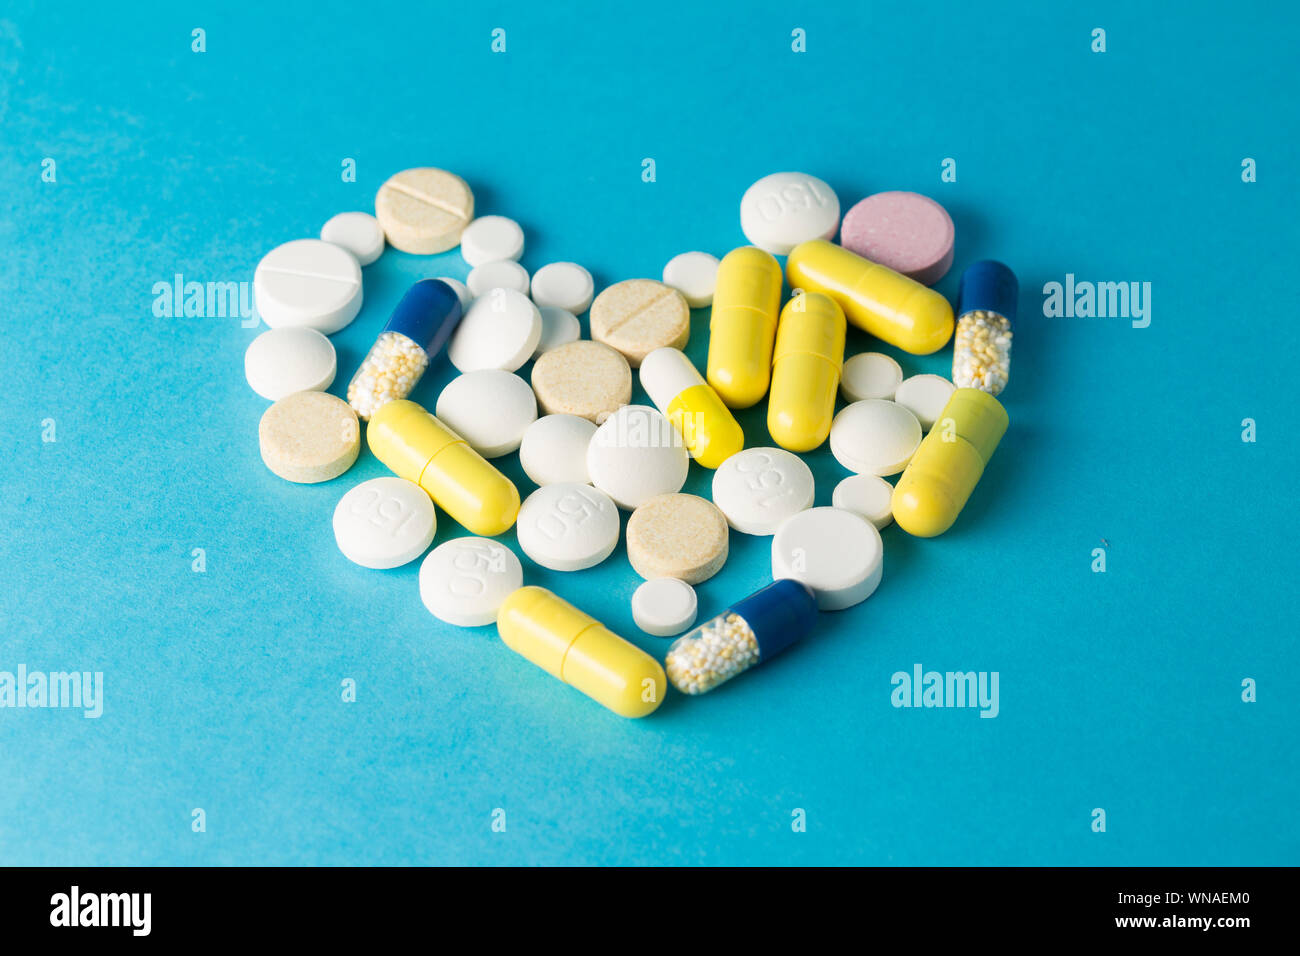 Medicamentos blanco, amarillo, azul redonda píldoras en forma de corazón sobre fondo azul. Foto de stock